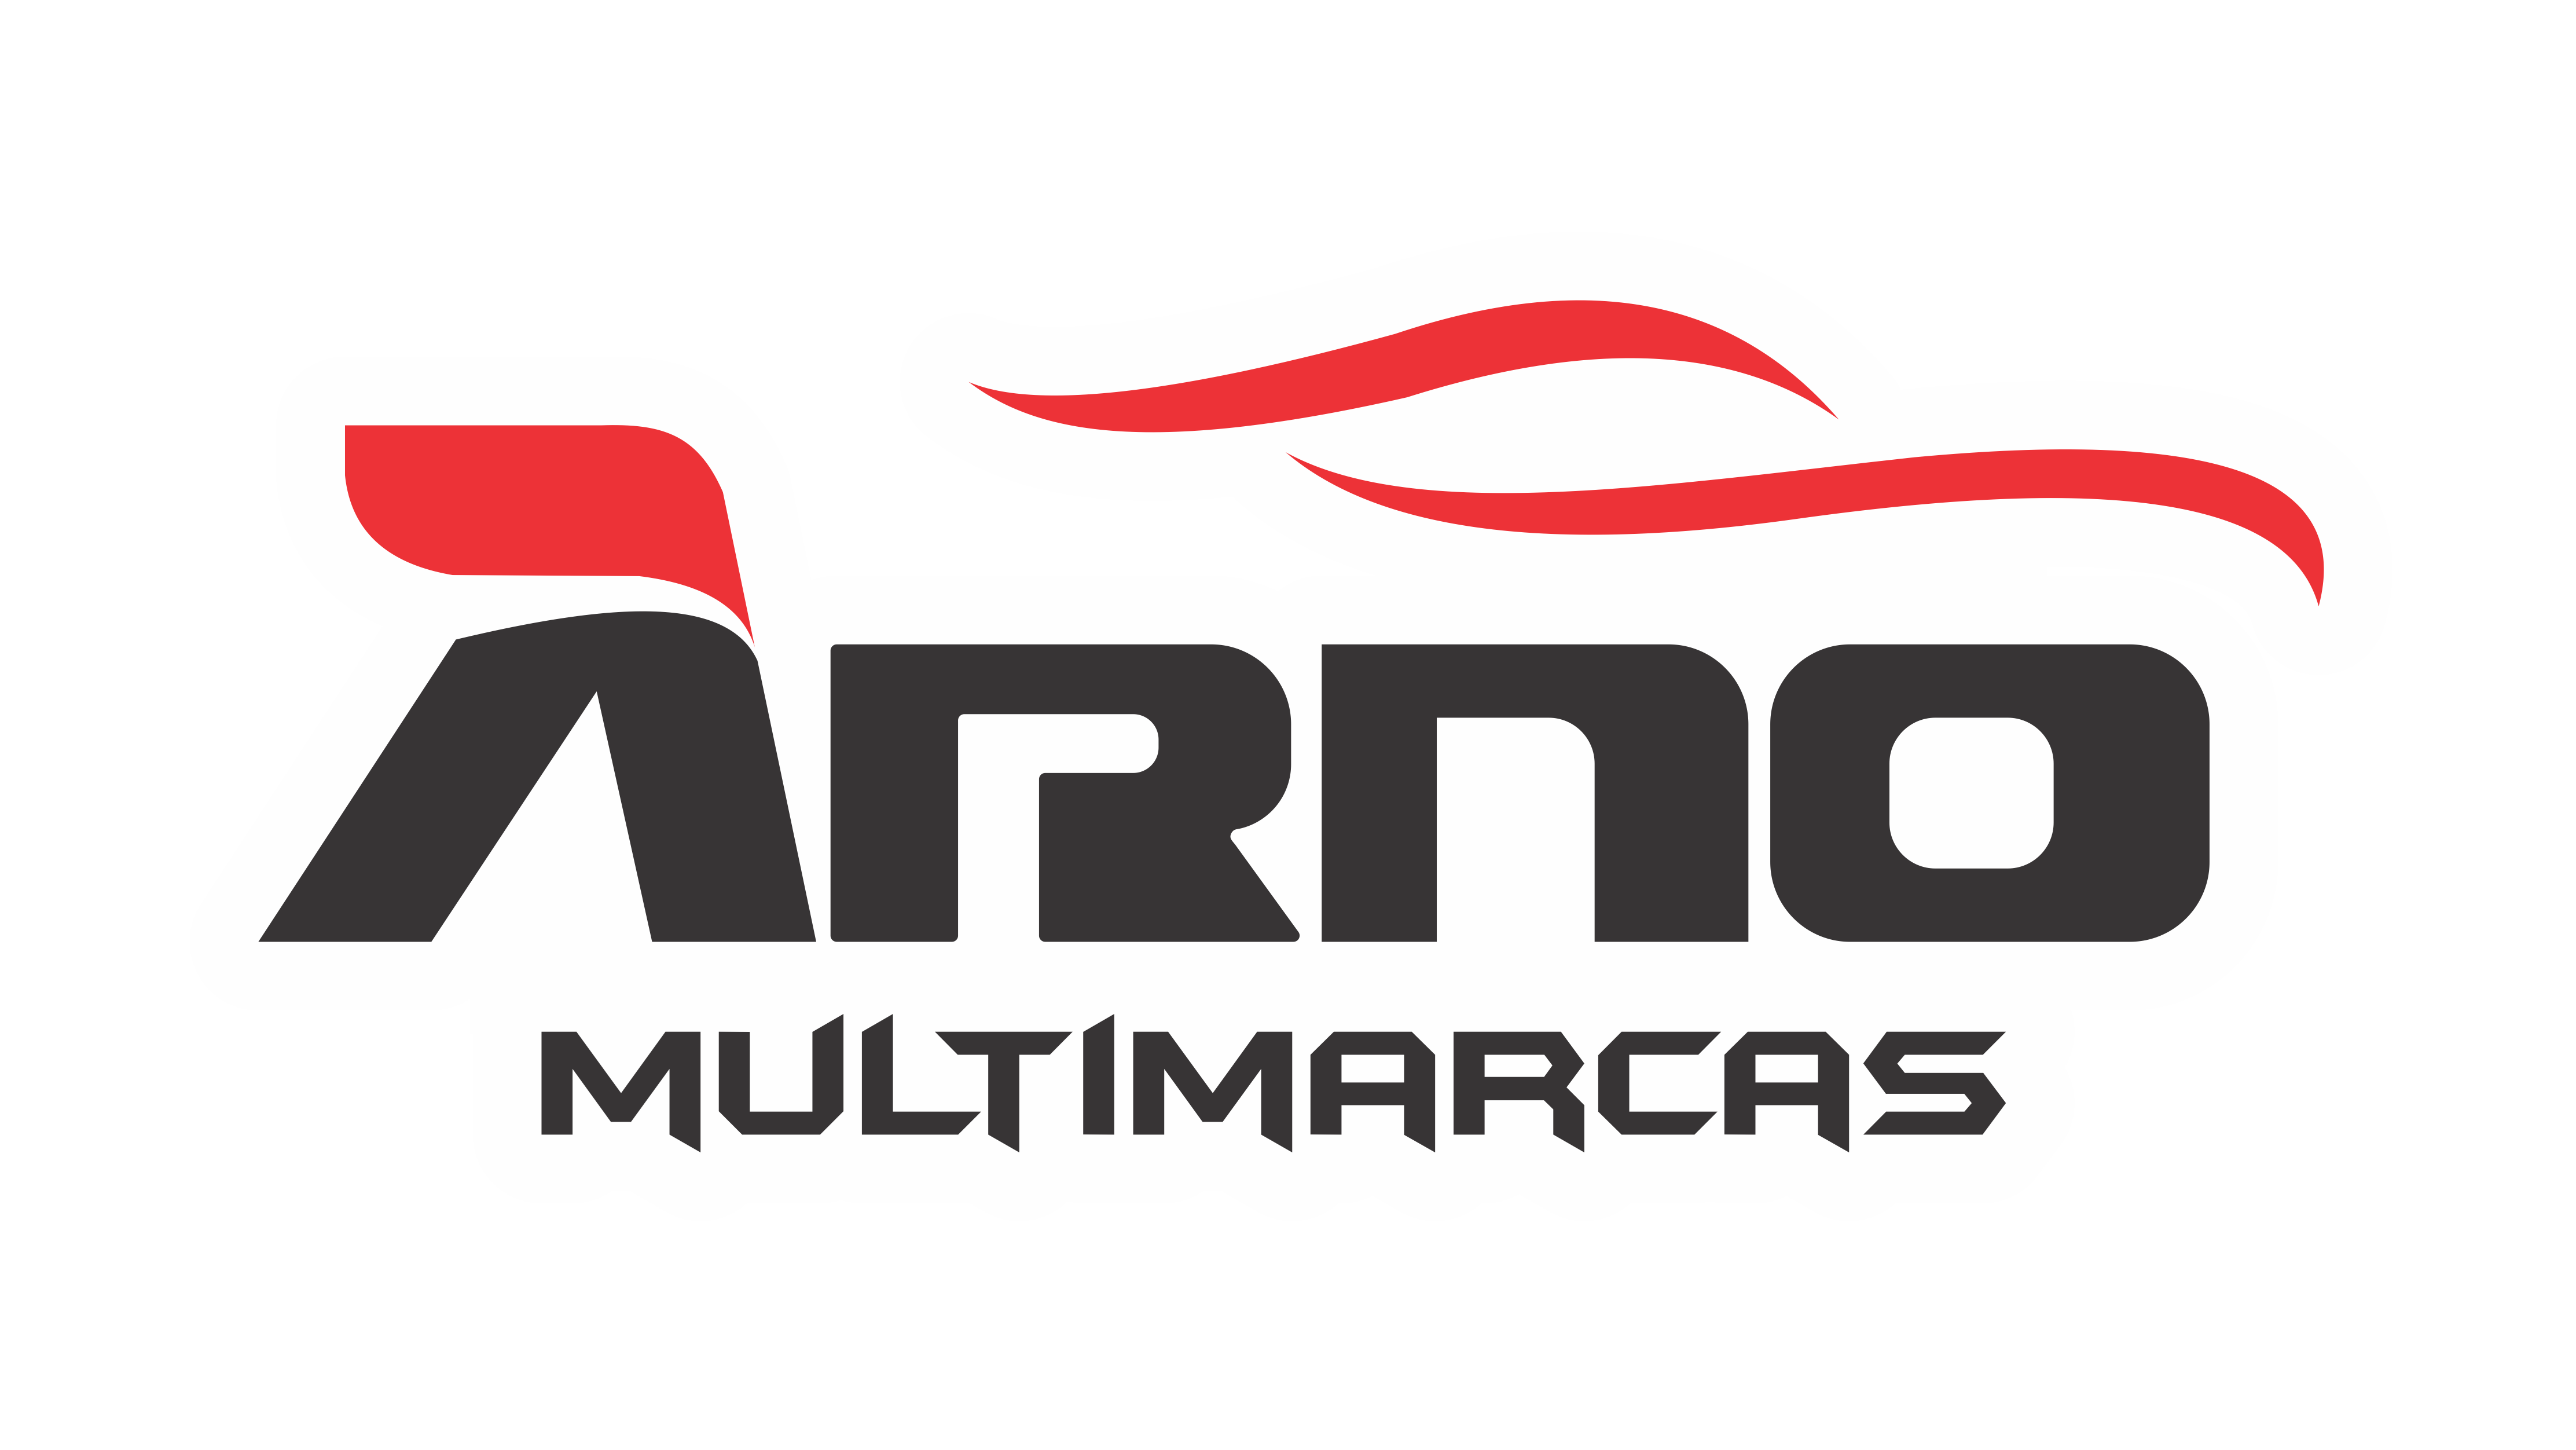 Arno Multimarcas